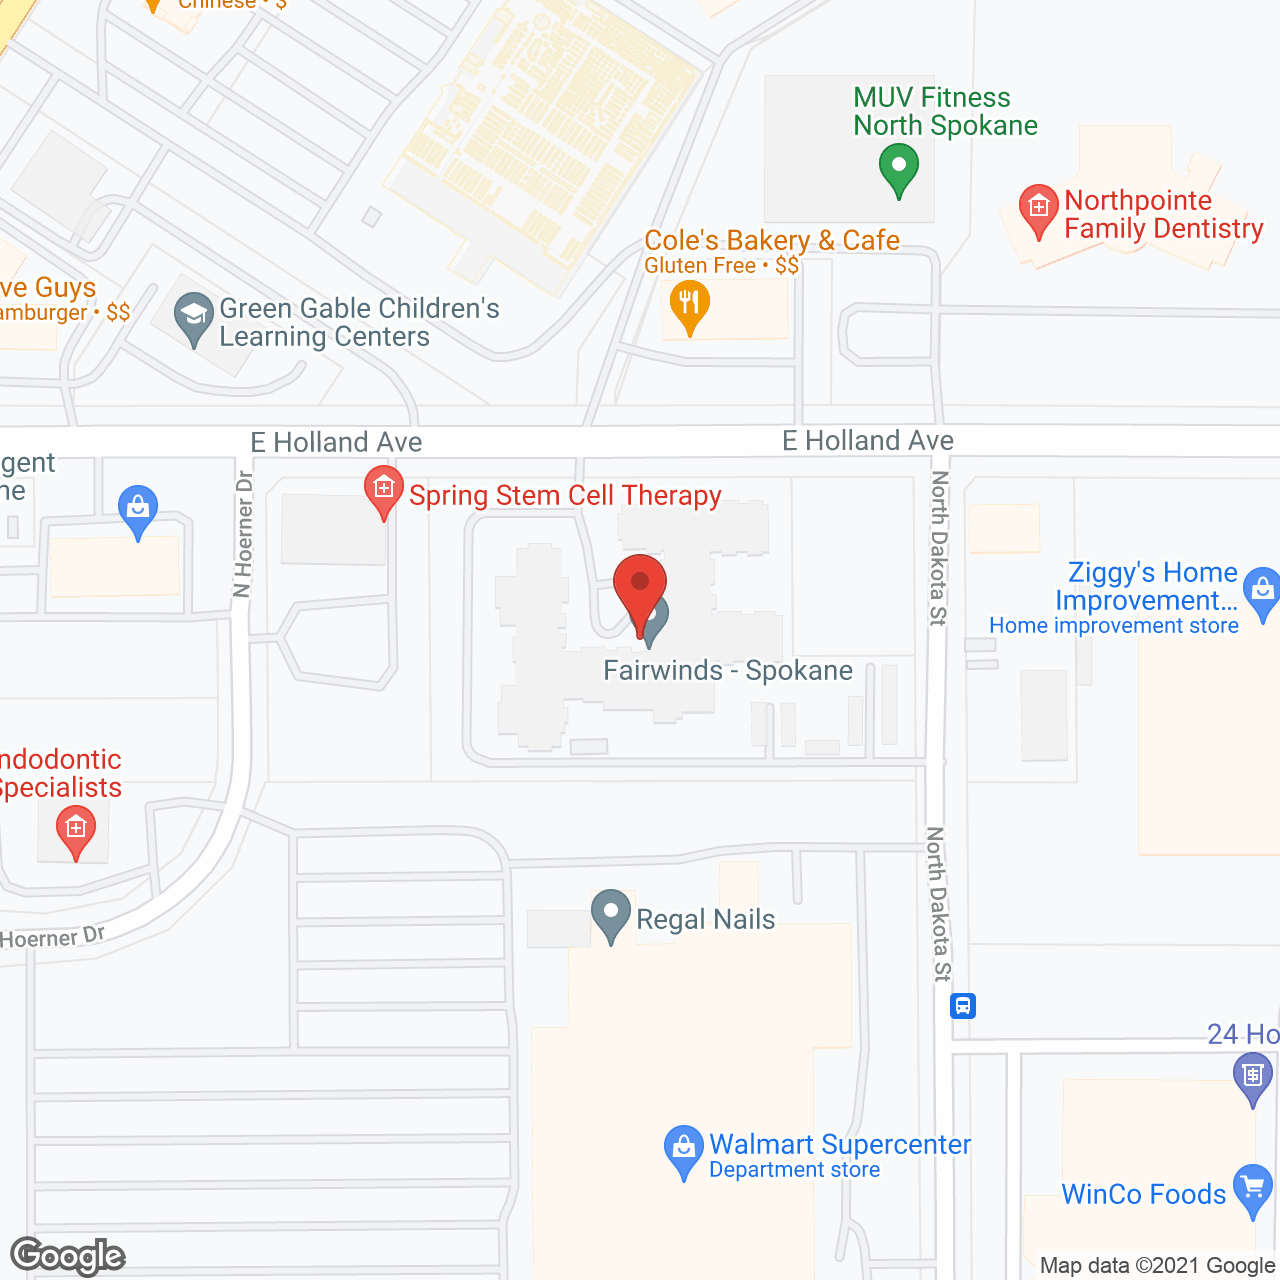 Fairwinds Spokane in google map